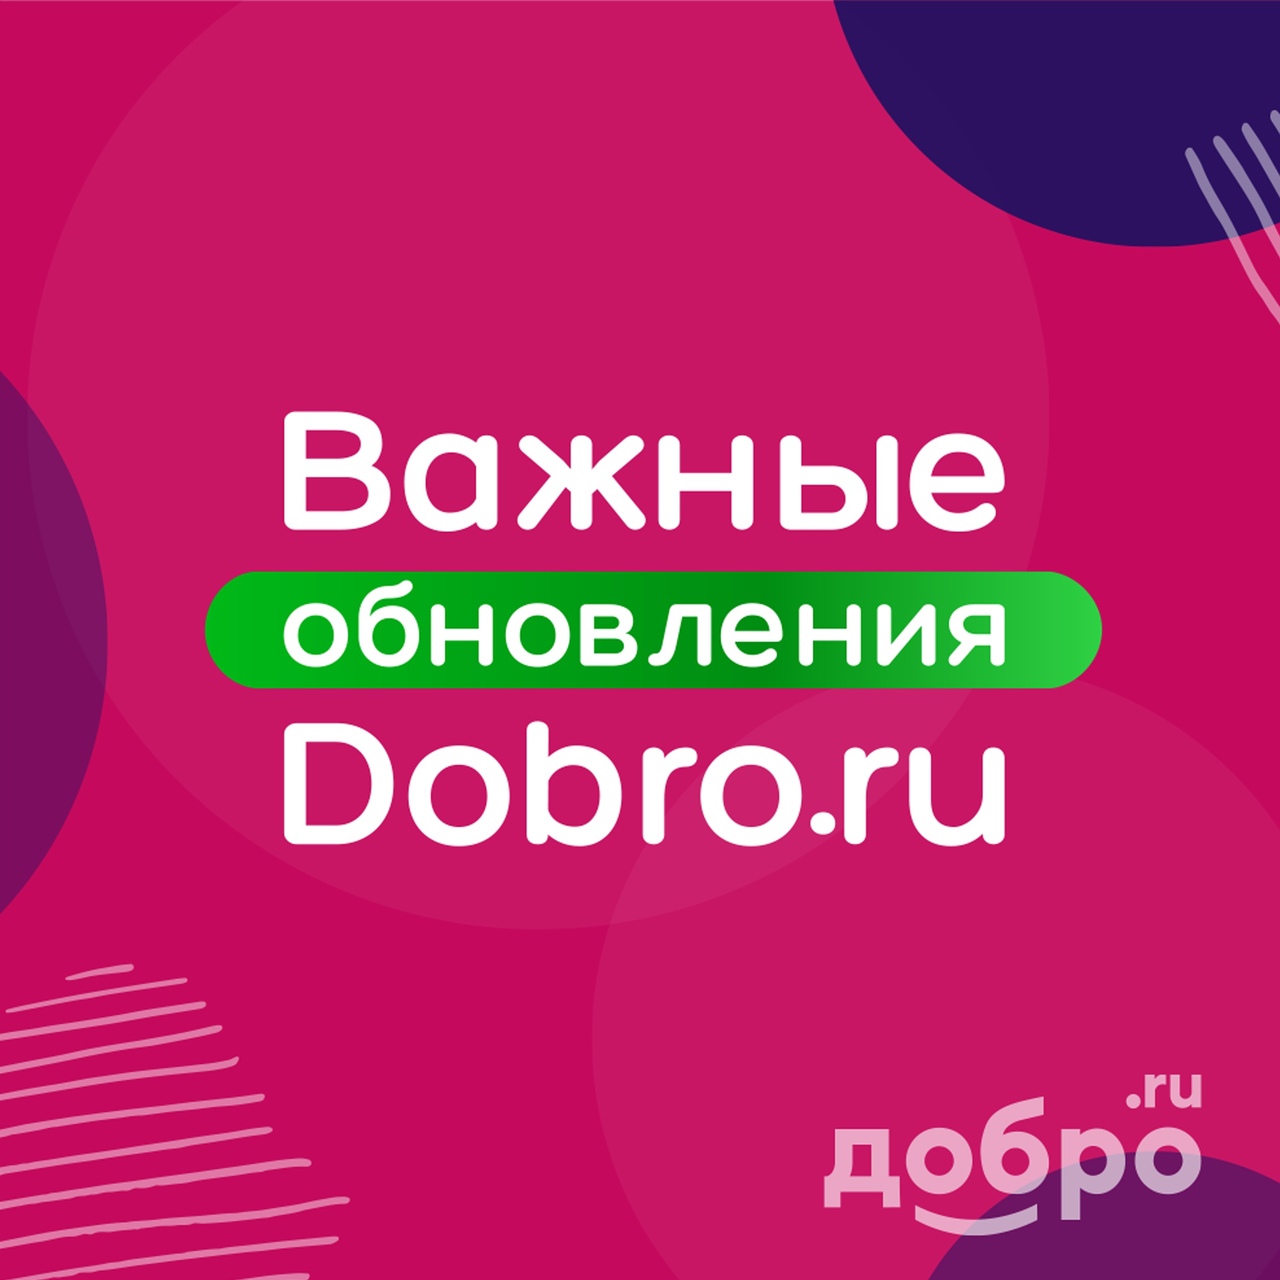 Важные обновления Dobro.ru